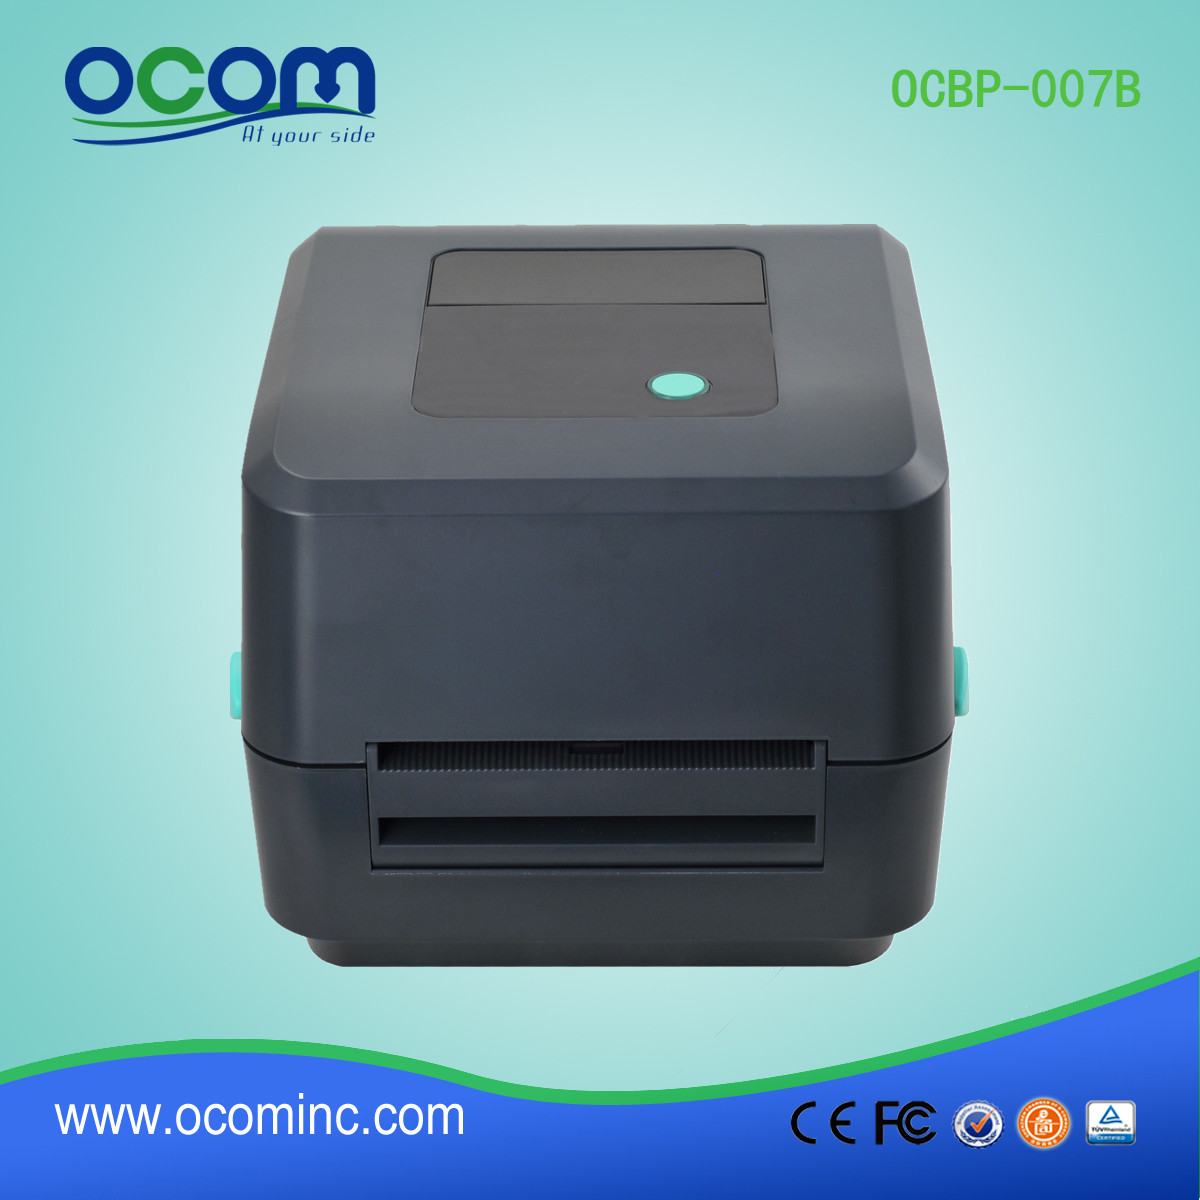 OCBP-007B黑色4“直接热敏打印机，带有条形码标签